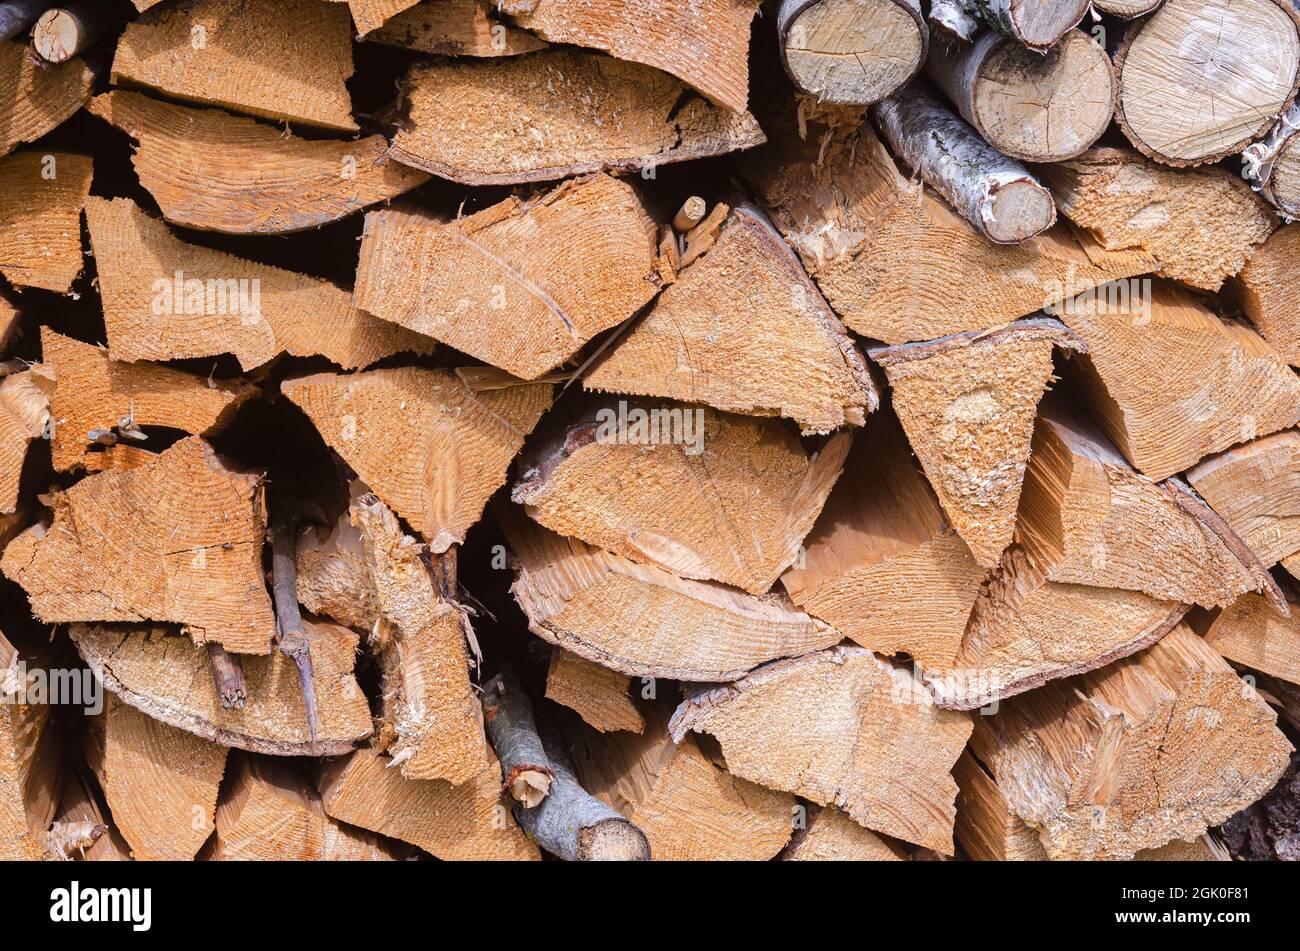 Raccogliendo per l'inverno una miscela di legna da ardere da specie diverse di alberi, ordinatamente accatastato. Legna da ardere per riscaldamento e cottura. Foto Stock